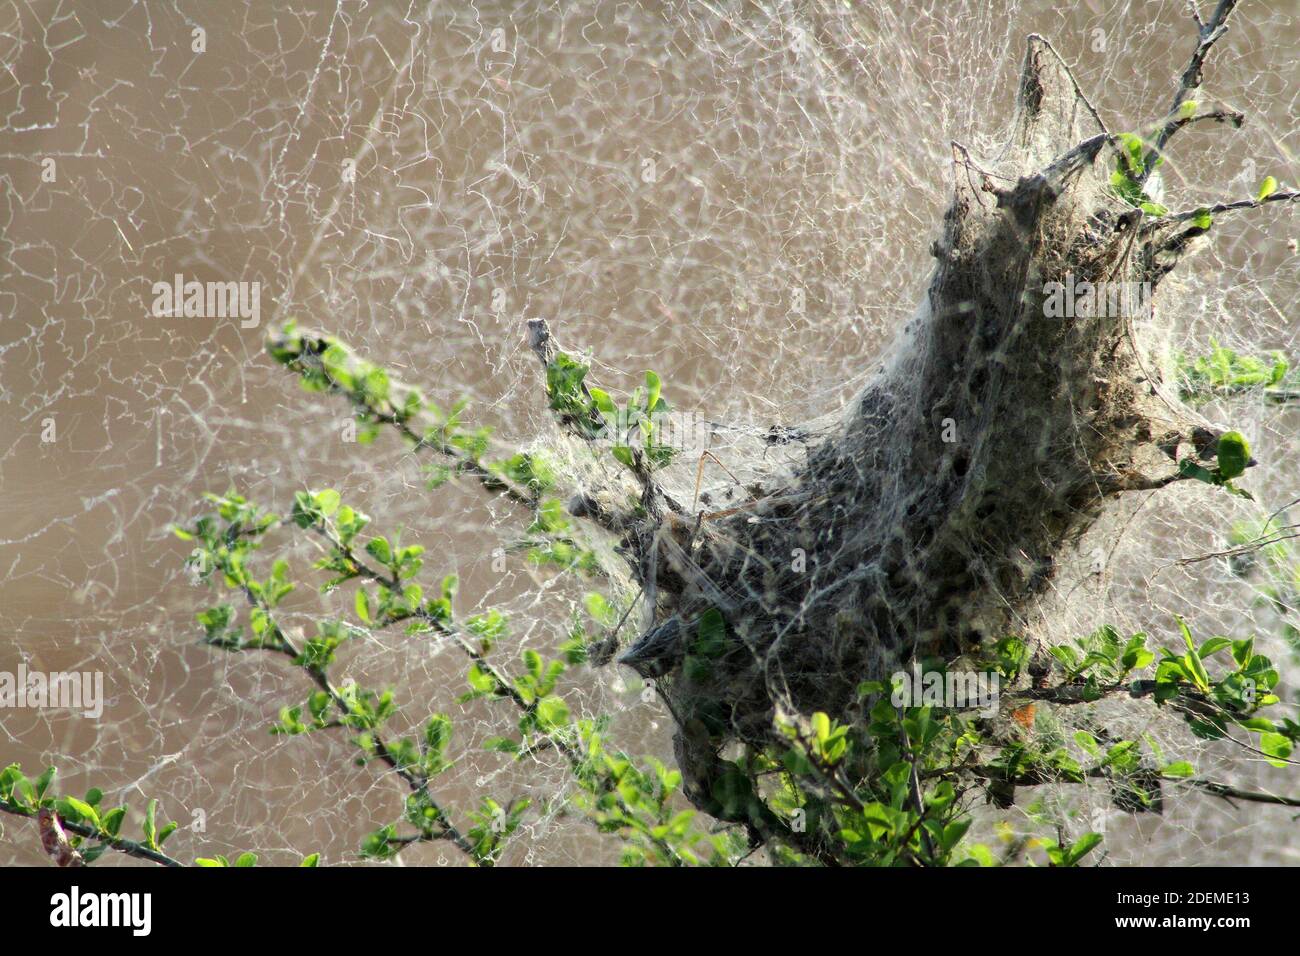 Large spider nest / web, Kruger National Park, South Africa Stock Photo